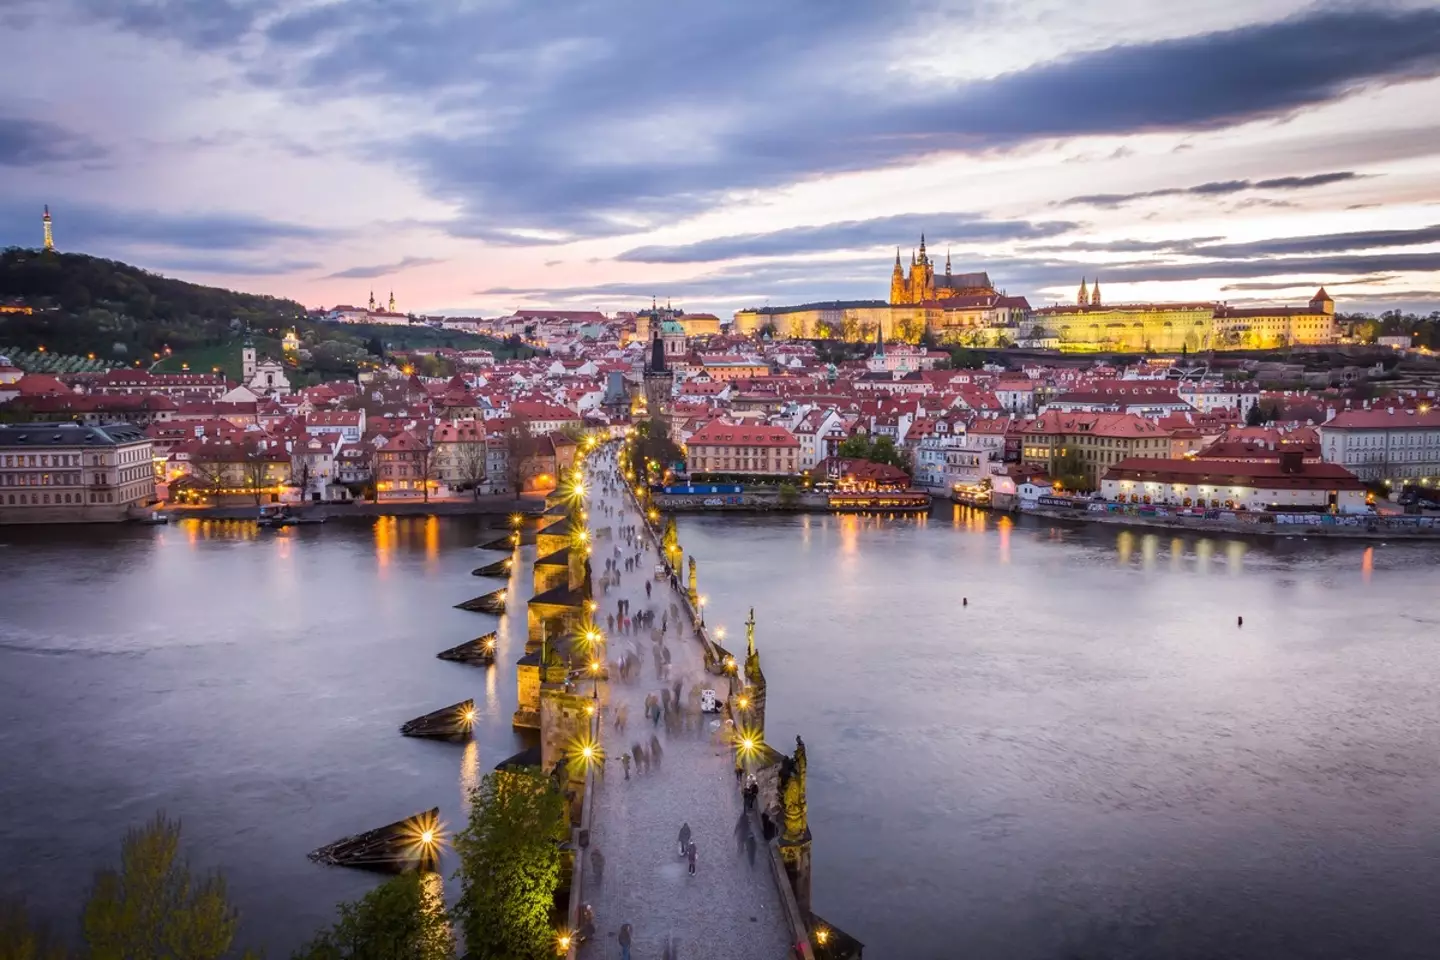 Fancy a trip to Prague?